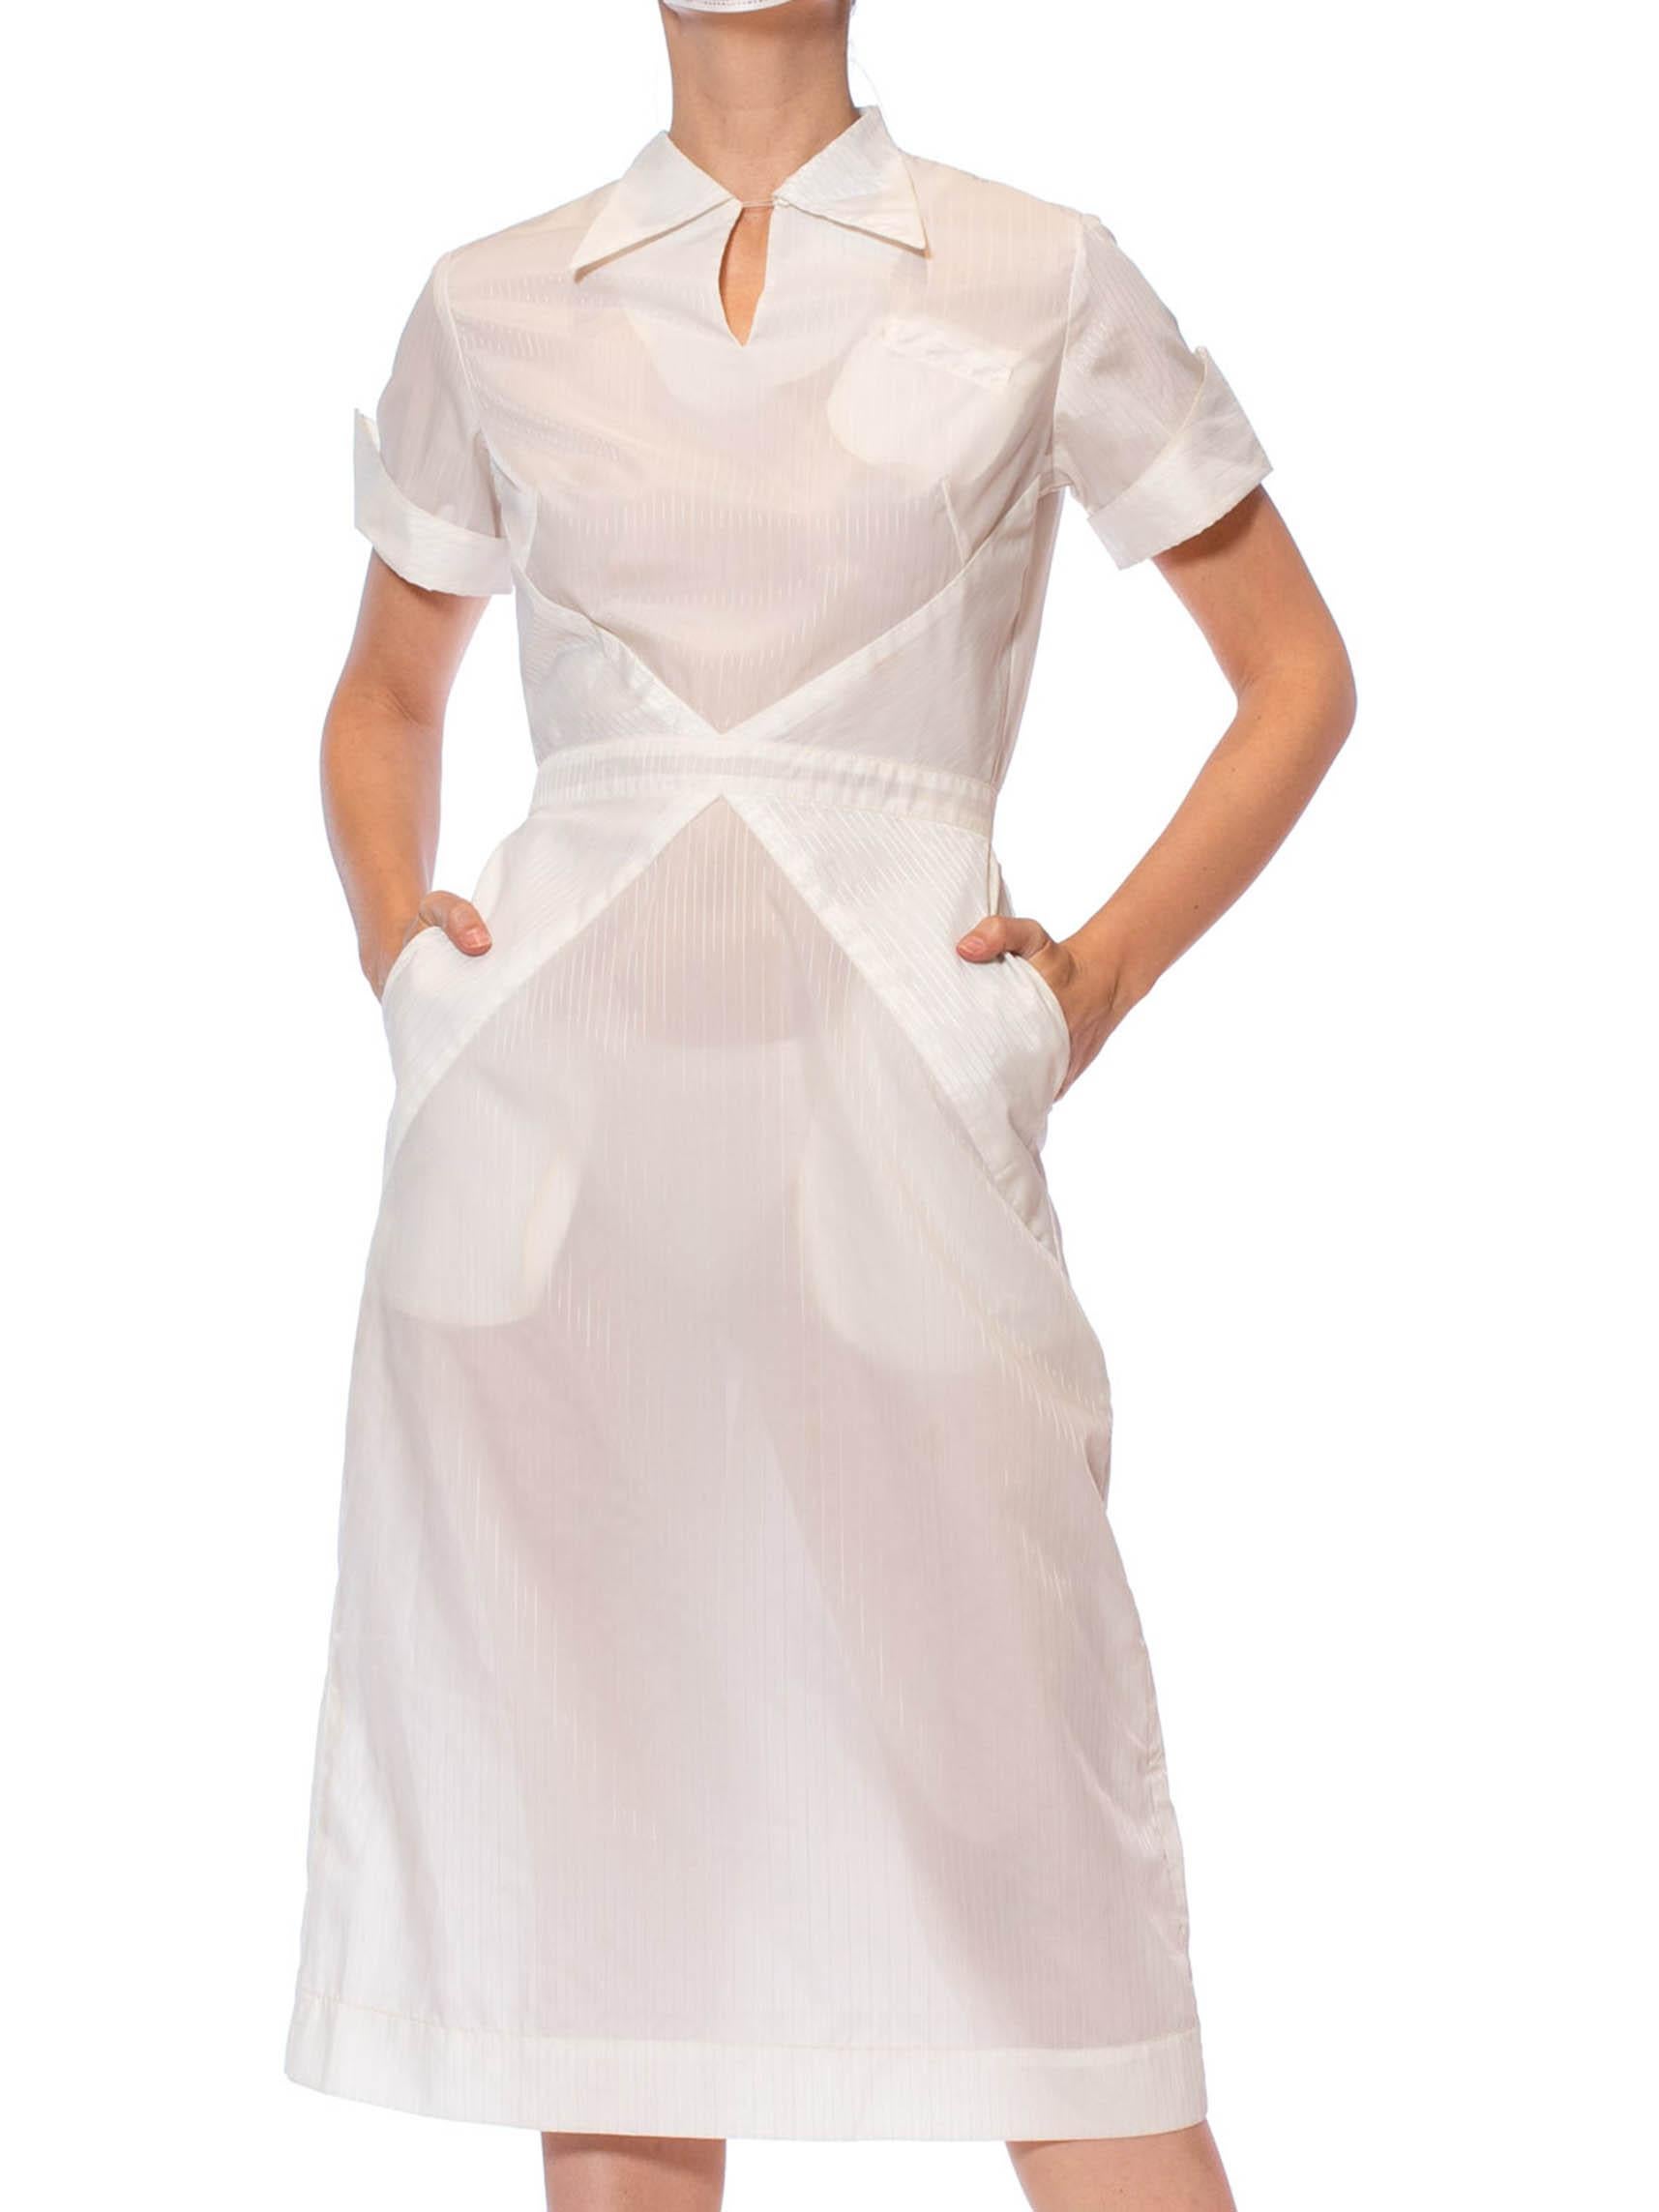 1950er Weißes Nylon Pin-Up Krankenschwester Uniform Kleid
Jahrzehnt: 1950s.

MATERIAL: Nylon .

Vintage By Zustand: Gut.

Messungen
Oberweite: 37 in.

Taille: 26 Zoll.

Hüften: 38 in.

Gesamtlänge: 45 Zoll.

US: S.